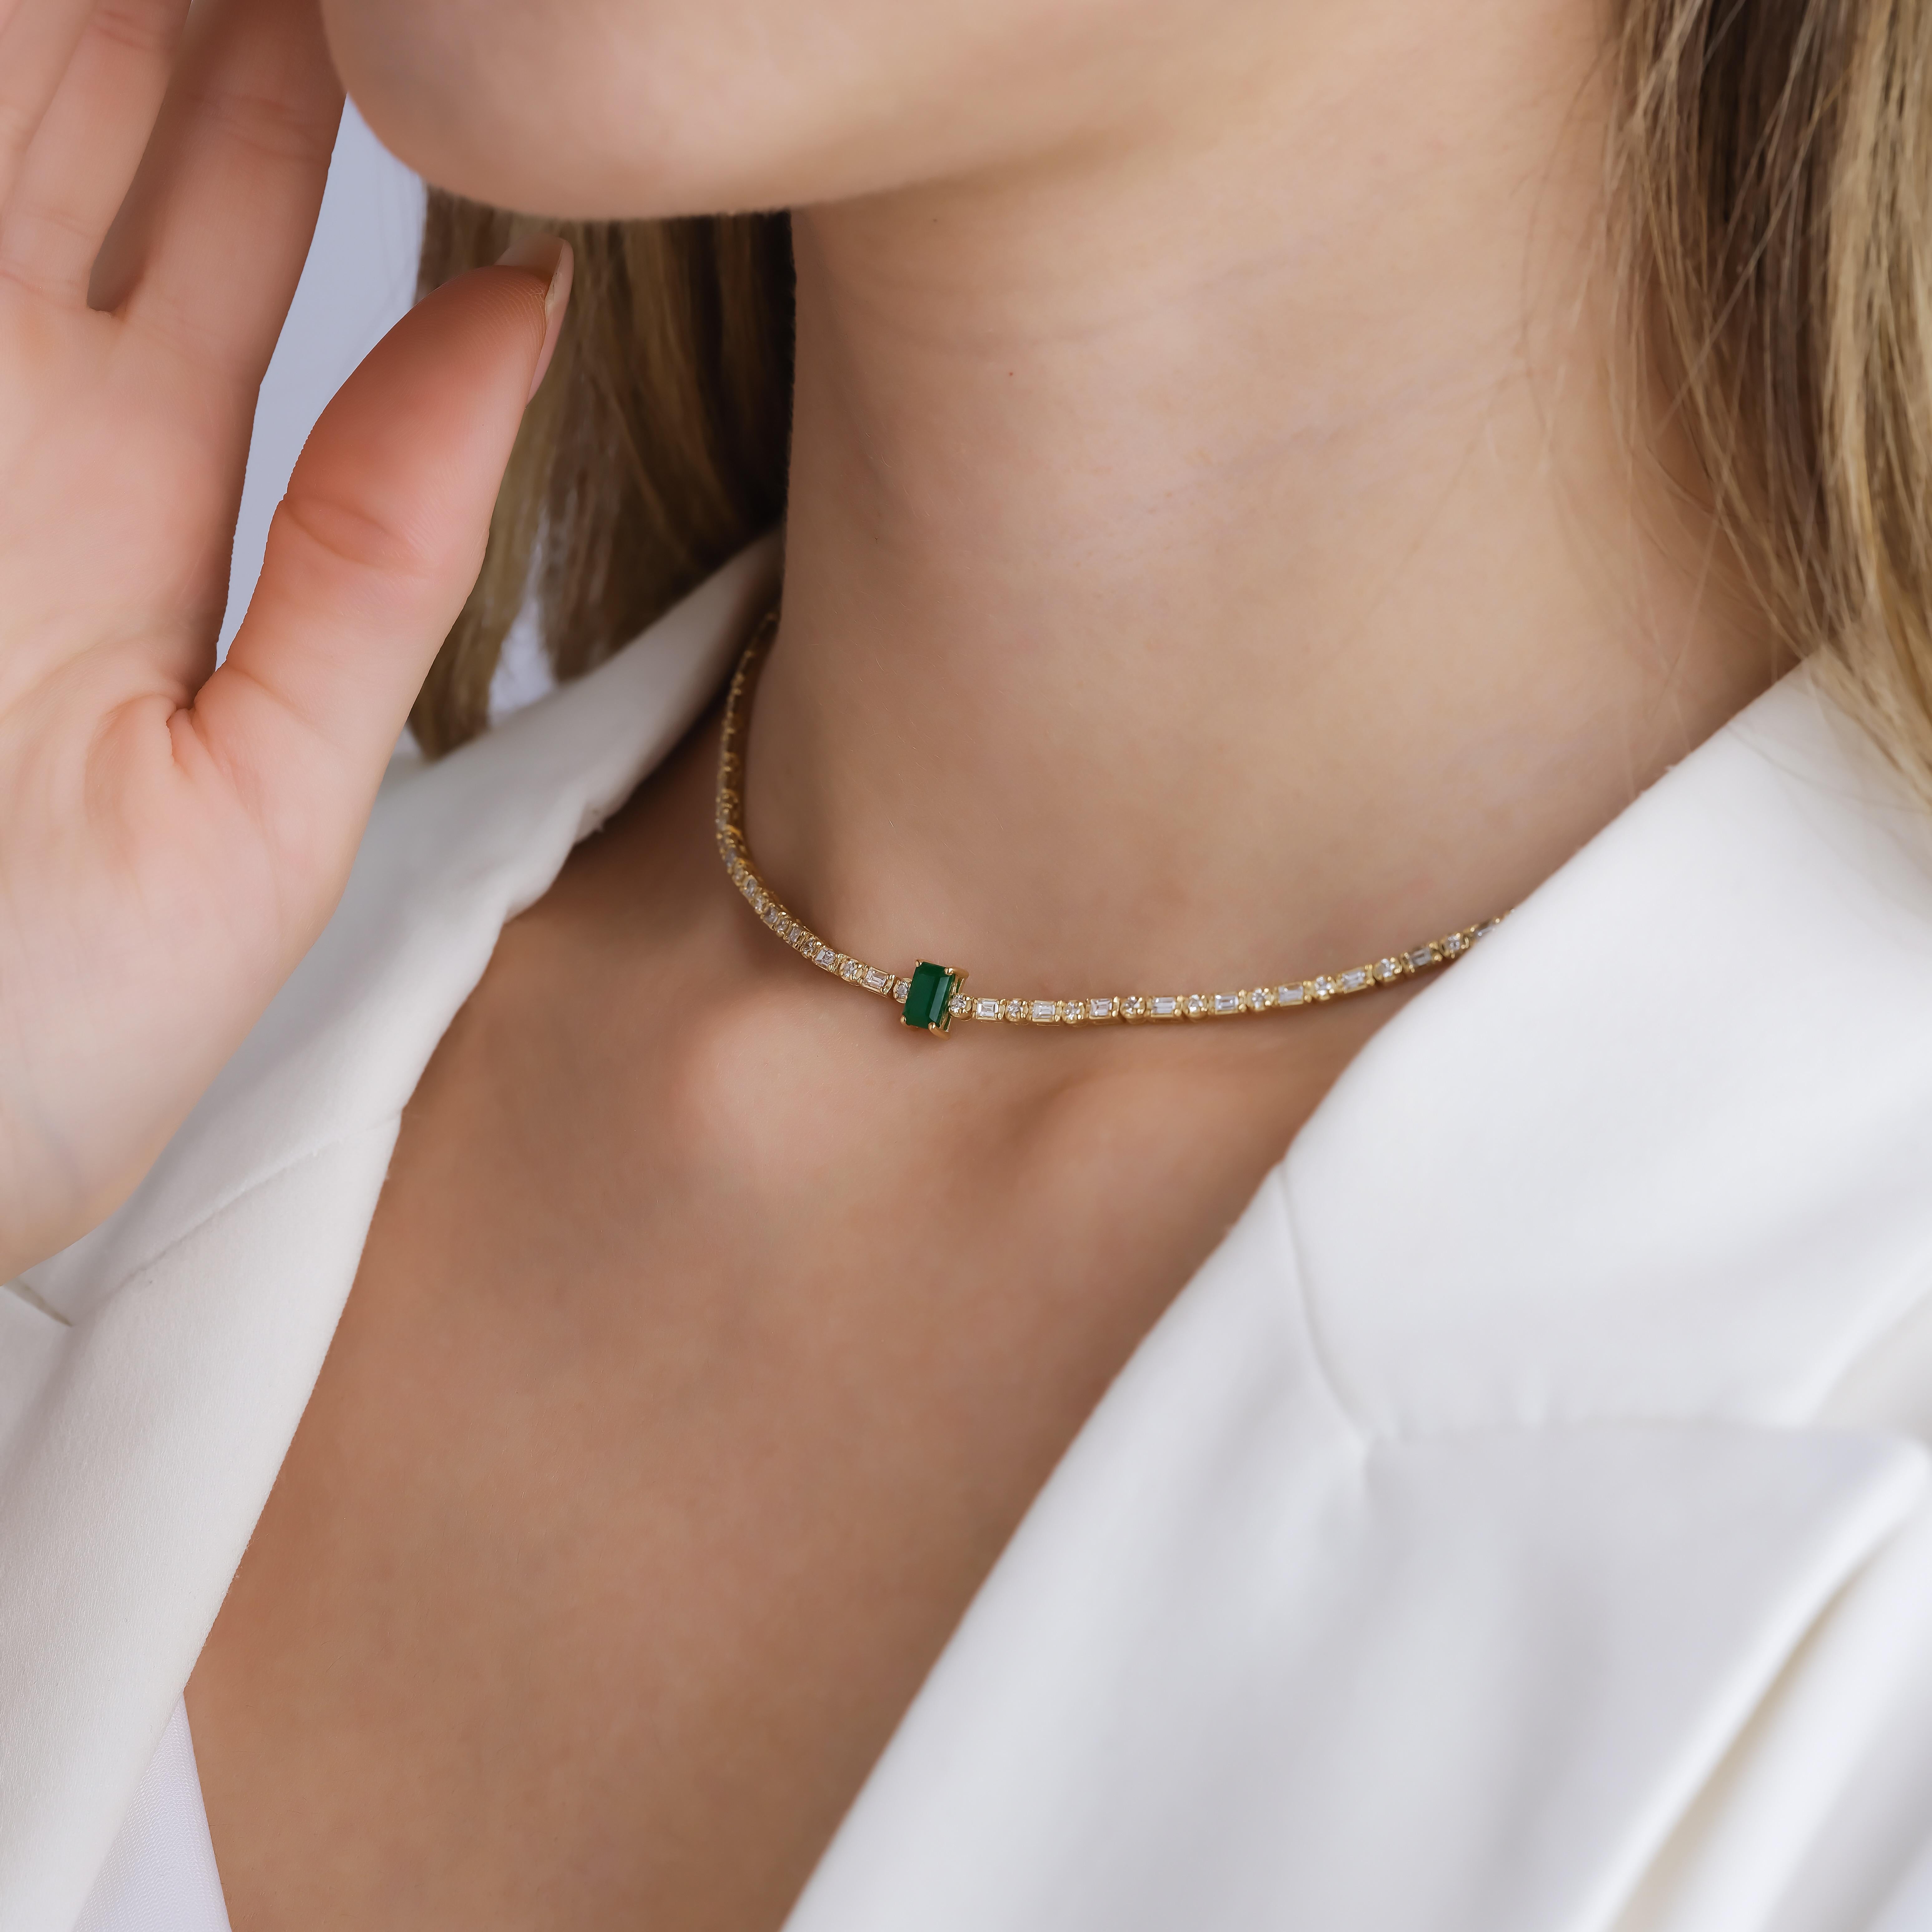 Exquisit im Design und unübertroffen in der Brillanz, ist diese Halskette ein Zeugnis zeitloser Eleganz. Der aus massivem 18-karätigem Gold gefertigte Anhänger präsentiert eine Reihe atemberaubender Smaragde, die jeweils von schillernden Diamanten